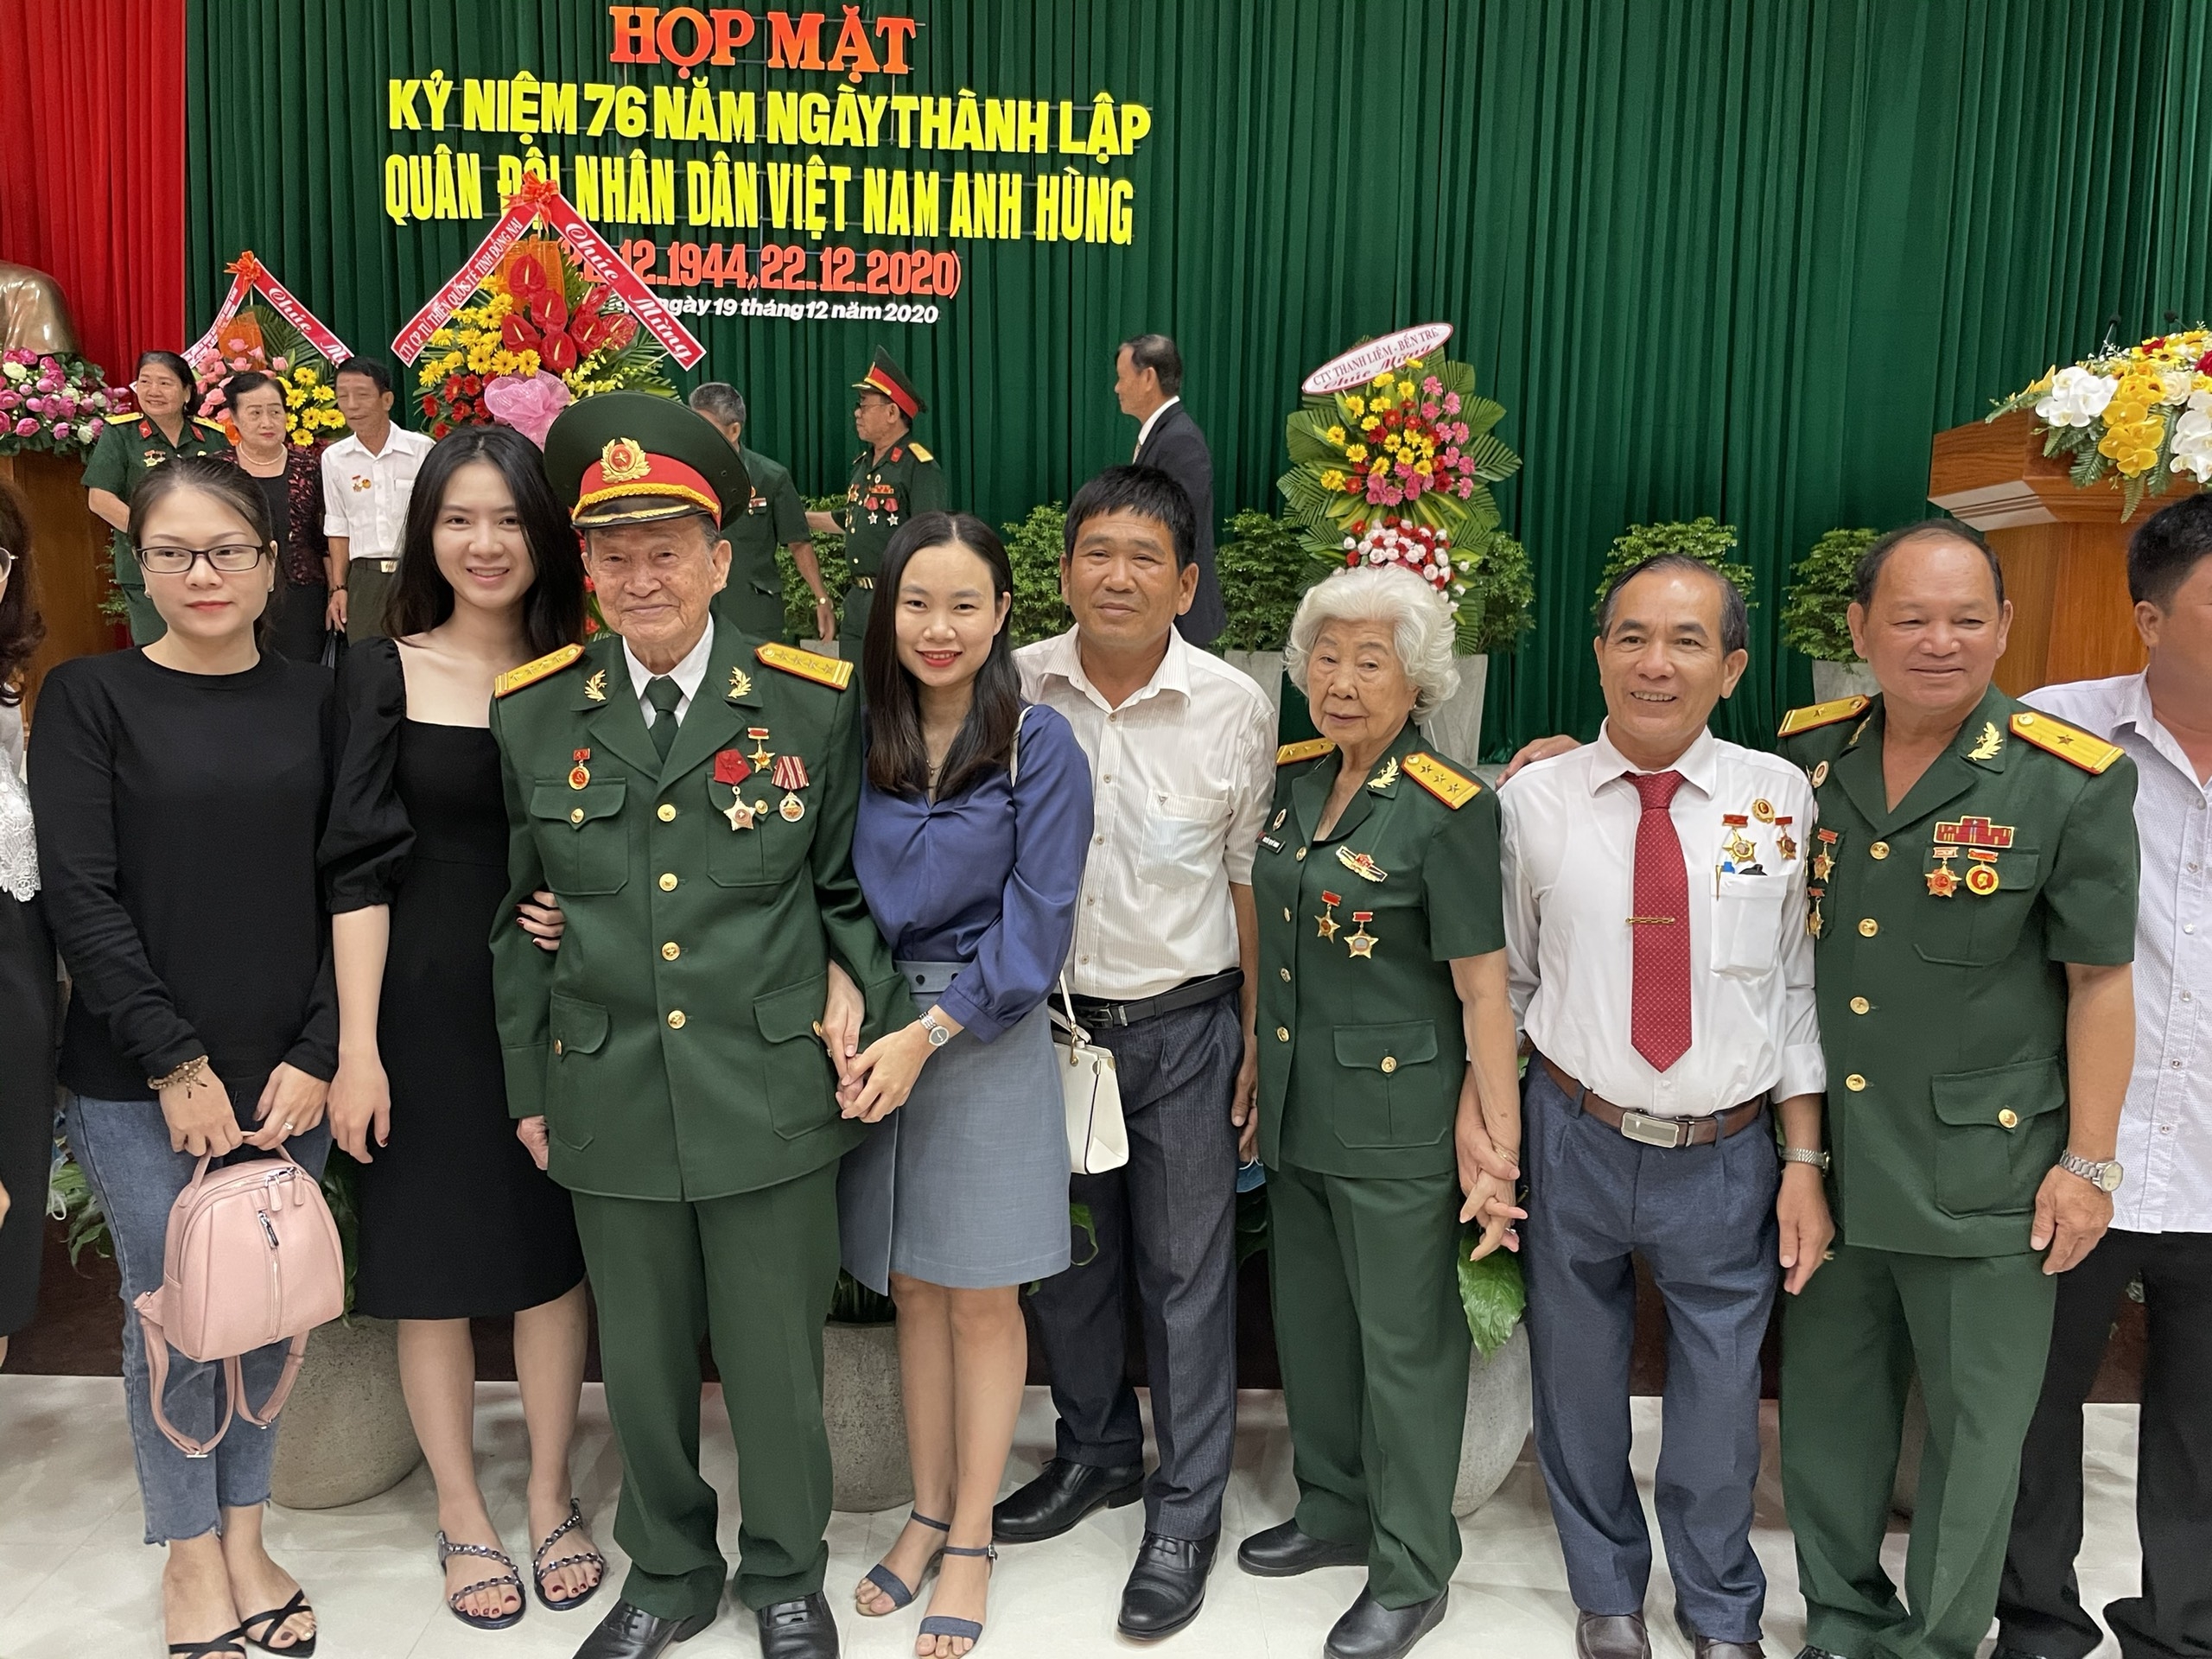  Quân đội Nhân dân Việt Nam